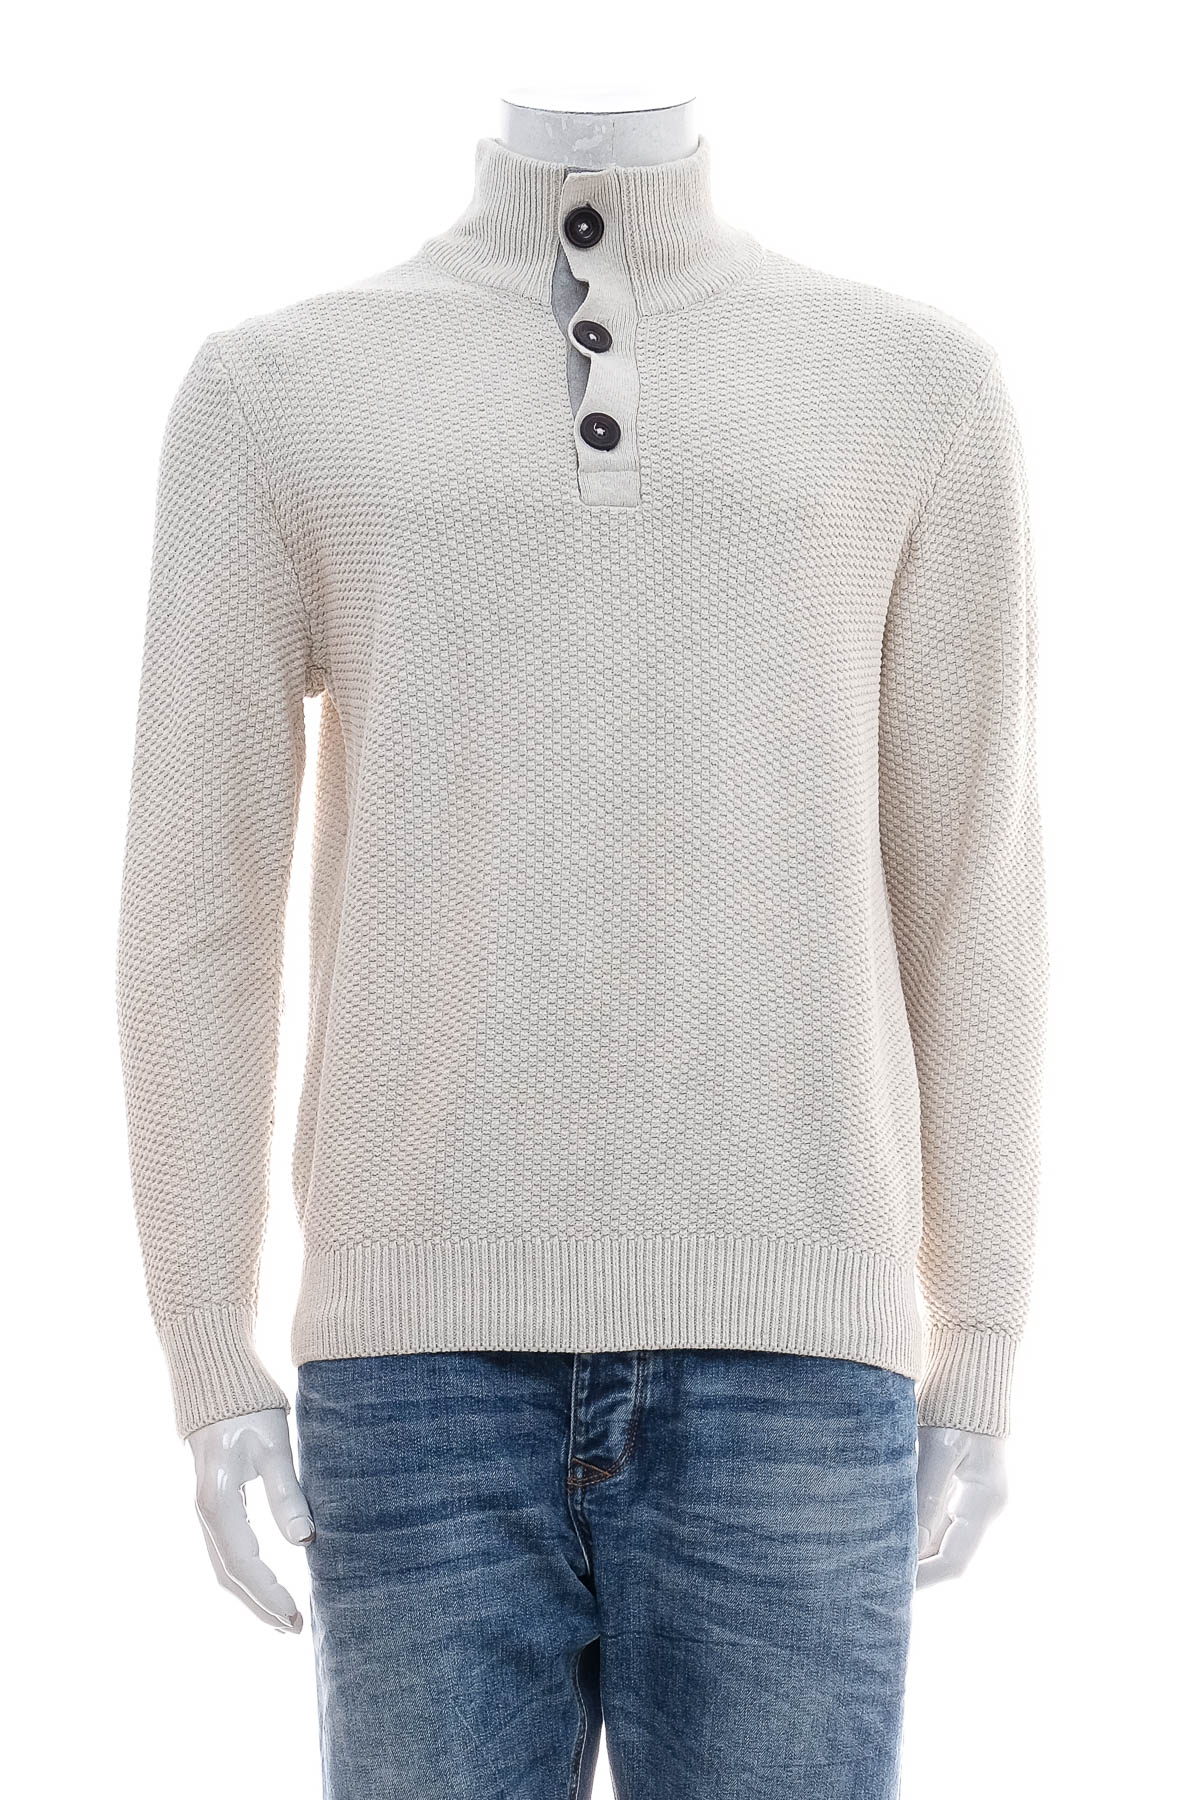 Men's sweater - Jacques Lemans - 0